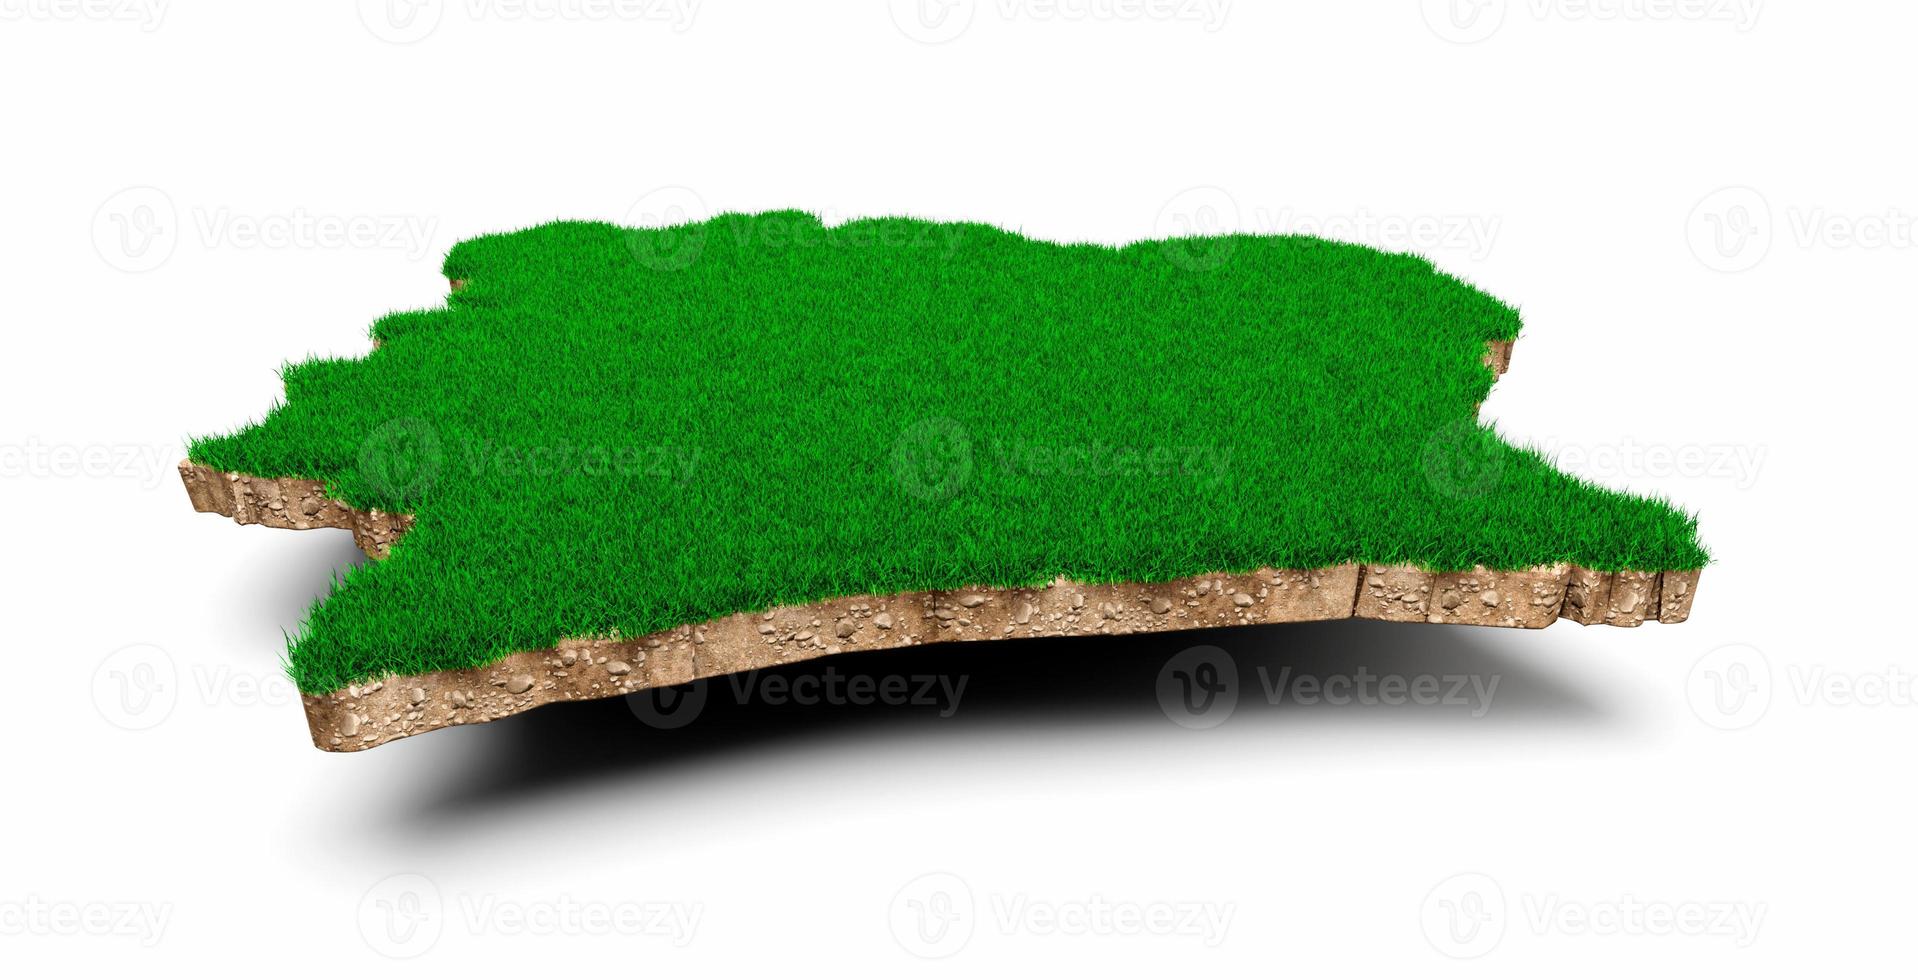 carte de la côte d'ivoire coupe transversale de la géologie des sols avec de l'herbe verte et de la texture du sol rocheux illustration 3d photo